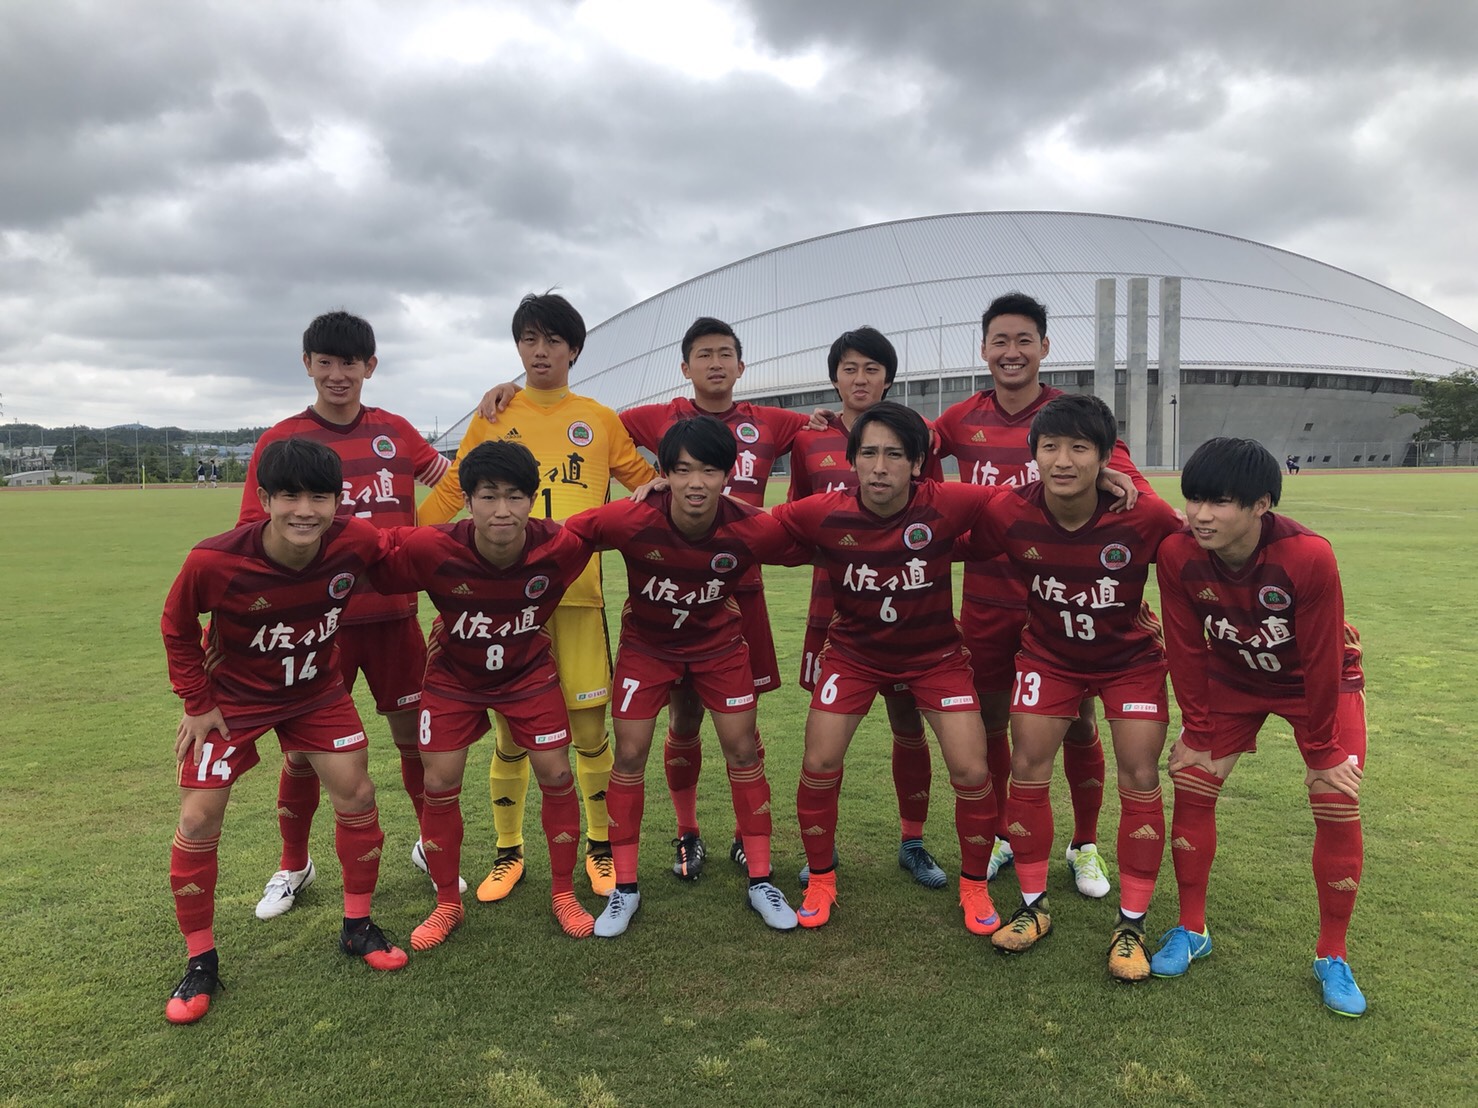 第43回東北地区大学サッカーリーグ1部第5節も勝利 仙台大学